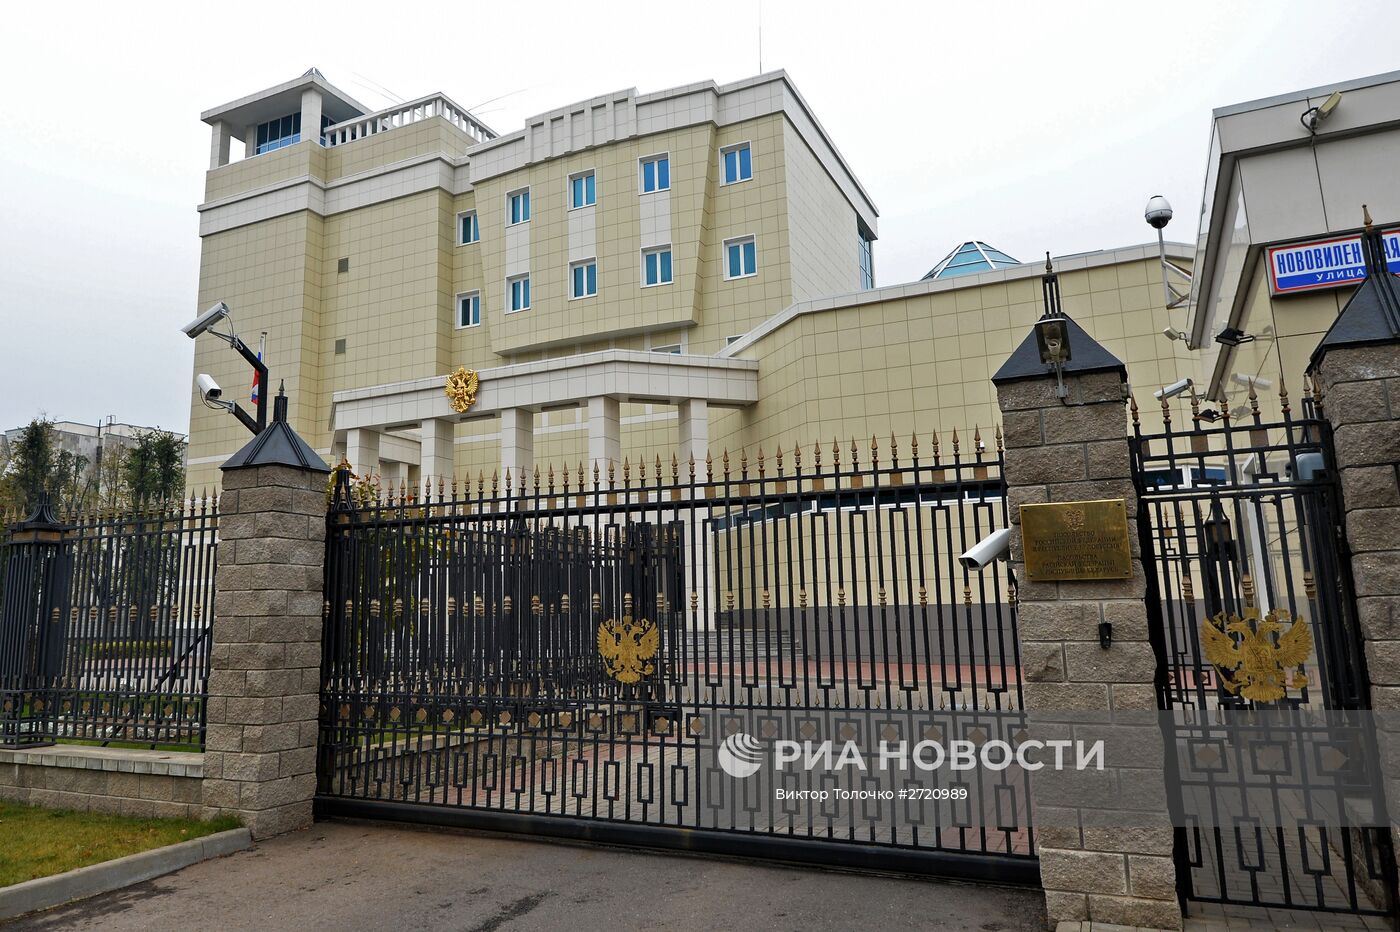 Представители сирийской диаспоры принесли цветы в посольство РФ в Минске